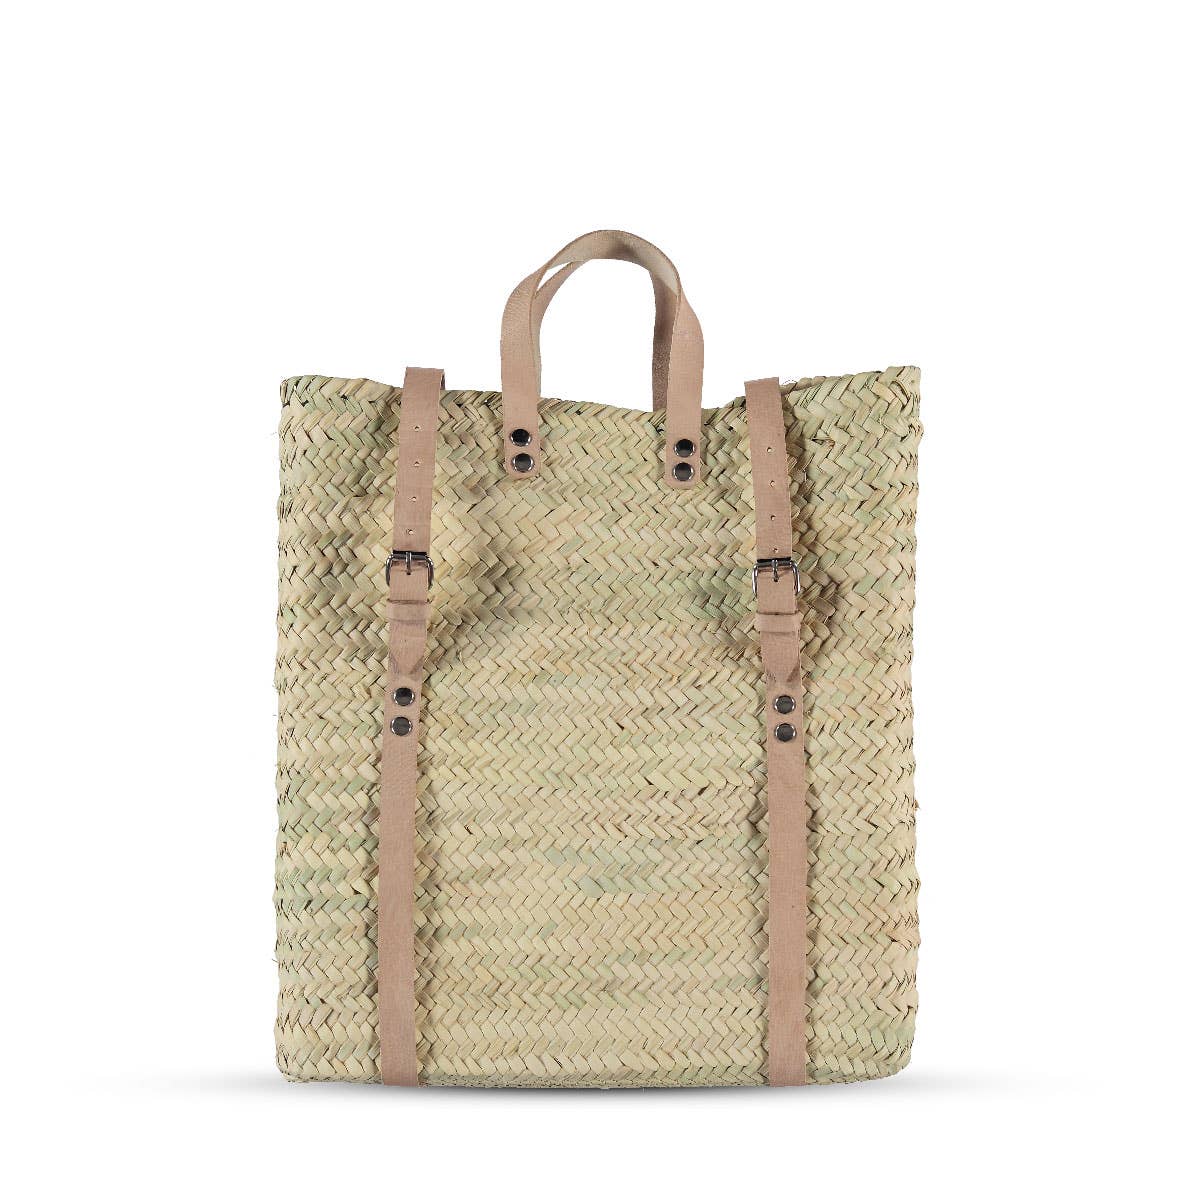 straw leather bag | Marrakesh artisan